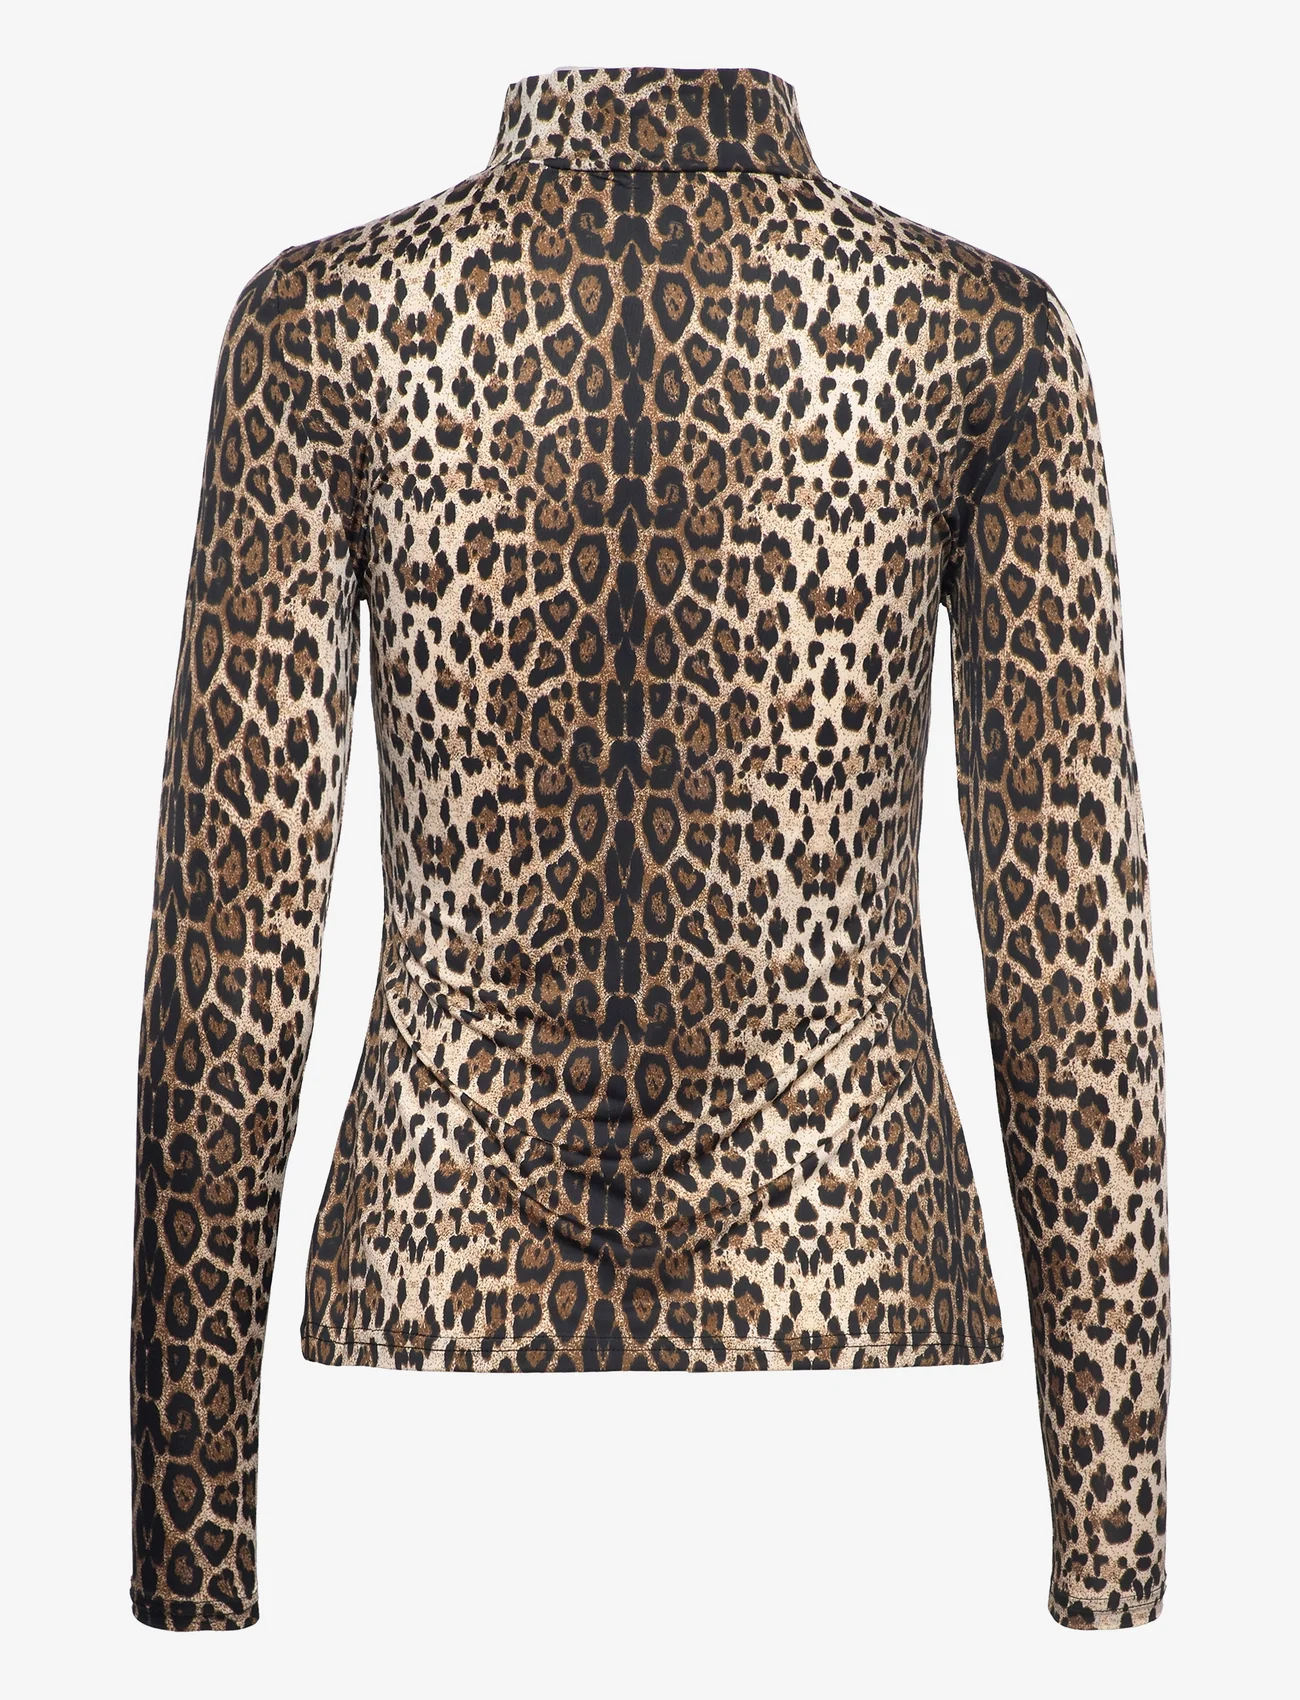 Sofie Schnoor - T-shirt - long-sleeved tops - leopard - 1